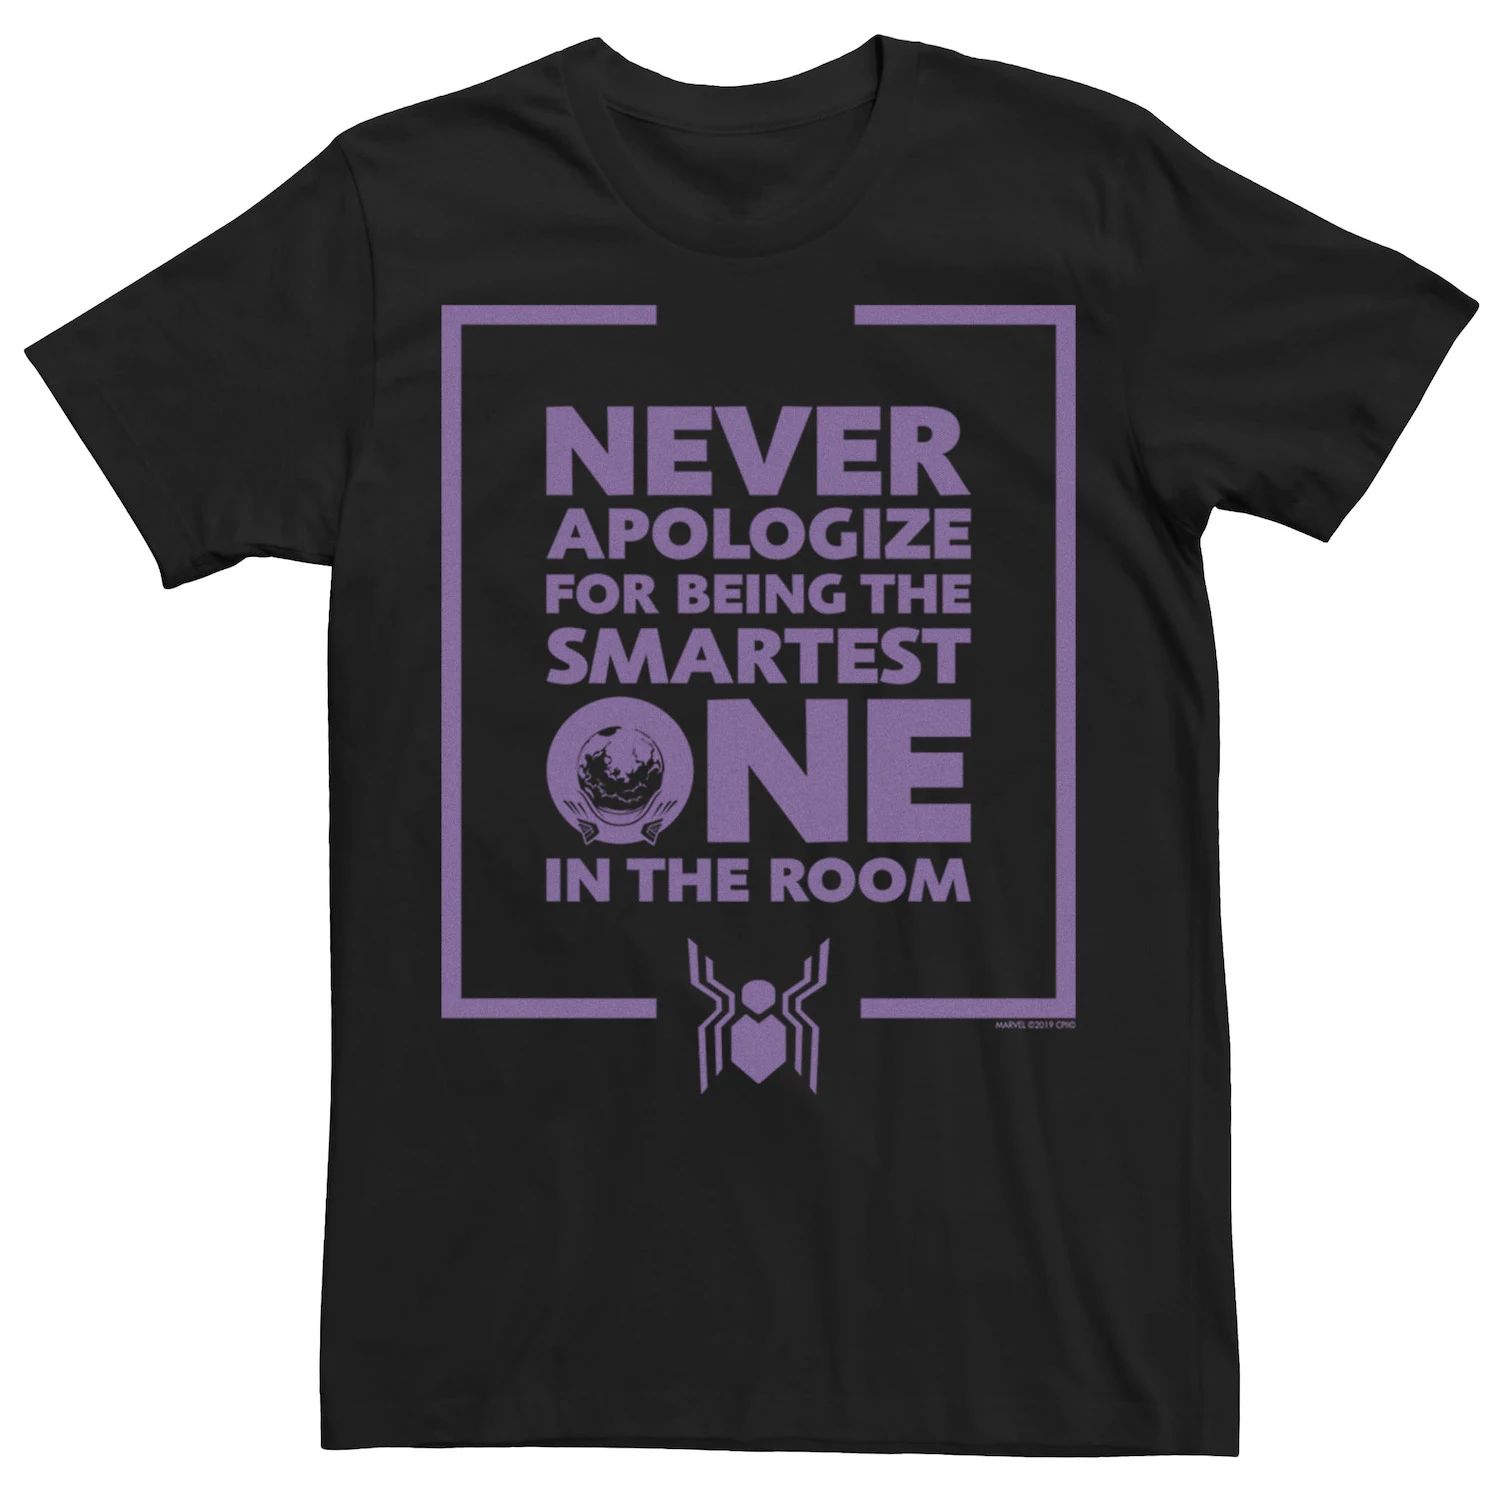 Мужская футболка с рисунком «Человек-паук Marvel вдали от дома» Mysterio «Никогда не извиняйся»